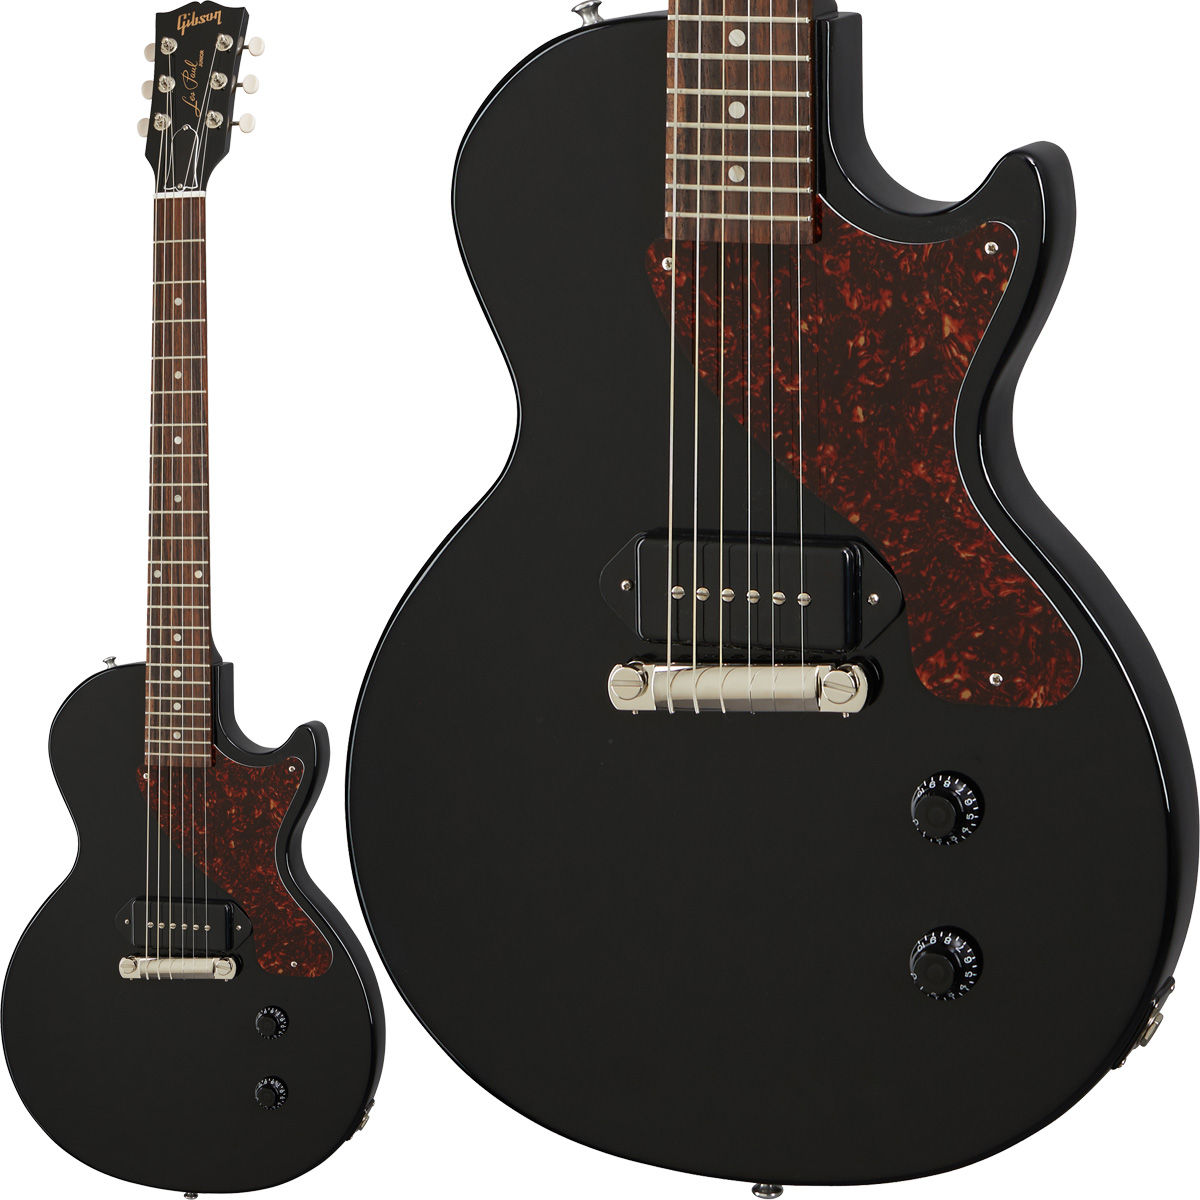 Gibson Les Paul Junior Ebony エレキギター レスポールジュニア ブラック 黒 【ギブソン】